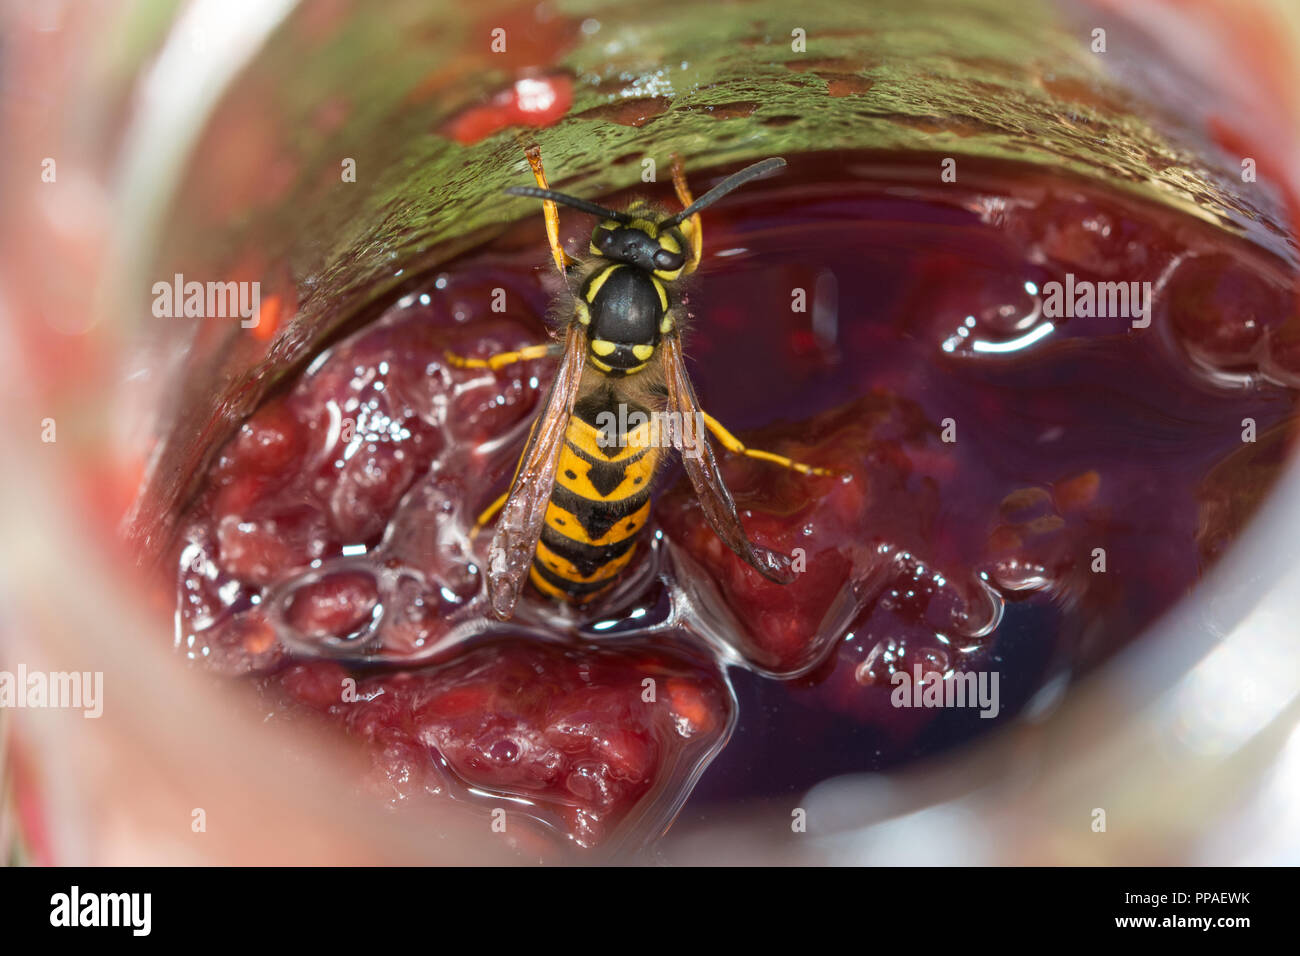 Gemeinsame Wespe (Vespula vulgaris) angezogen, einen Topf mit himbeermarmelade Stockfoto